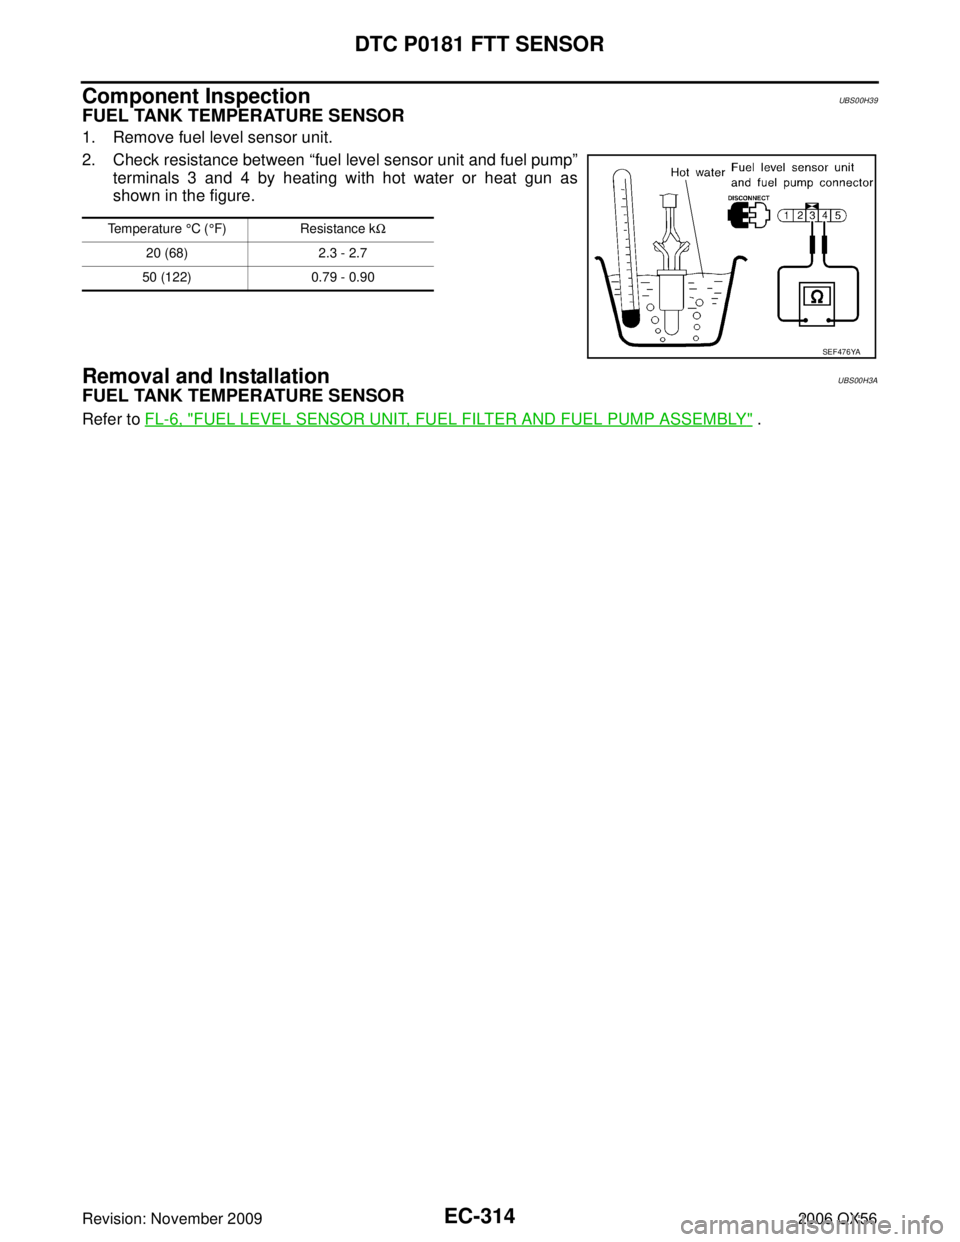 INFINITI QX56 2006  Factory Service Manual EC-314Revision: November 2009
DTC P0181 FTT SENSOR
2006 QX56
Component InspectionUBS00H39
FUEL TANK TEMPERATURE SENSOR
1. Remove fuel level sensor unit.
2. Check resistance between “fuel level senso